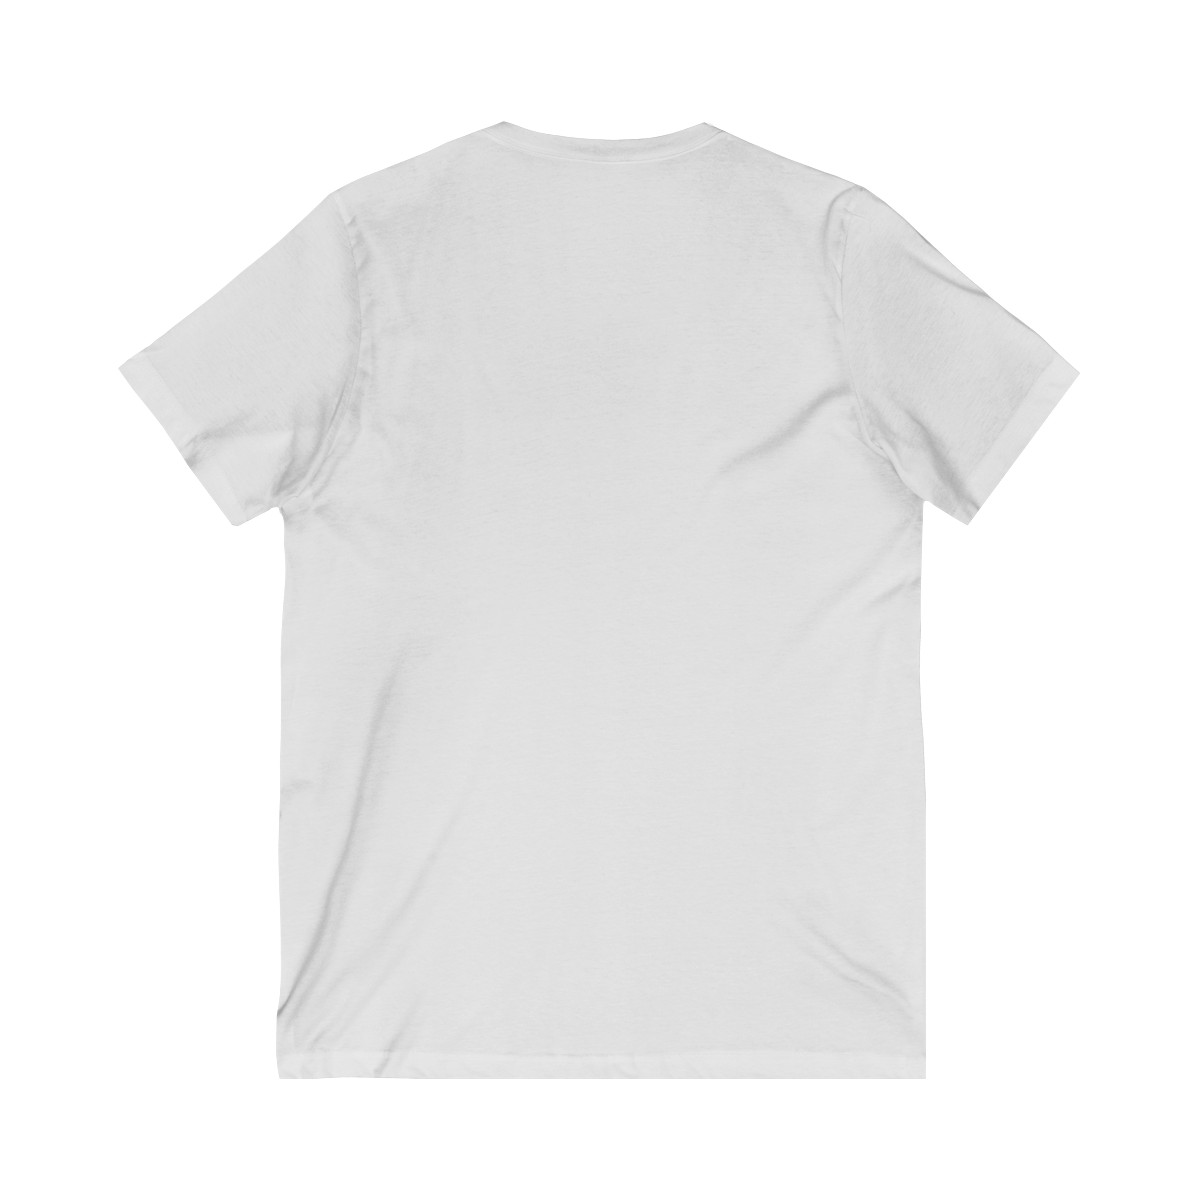 MAGA Girl - V-Neck T-Shirt product thumbnail image